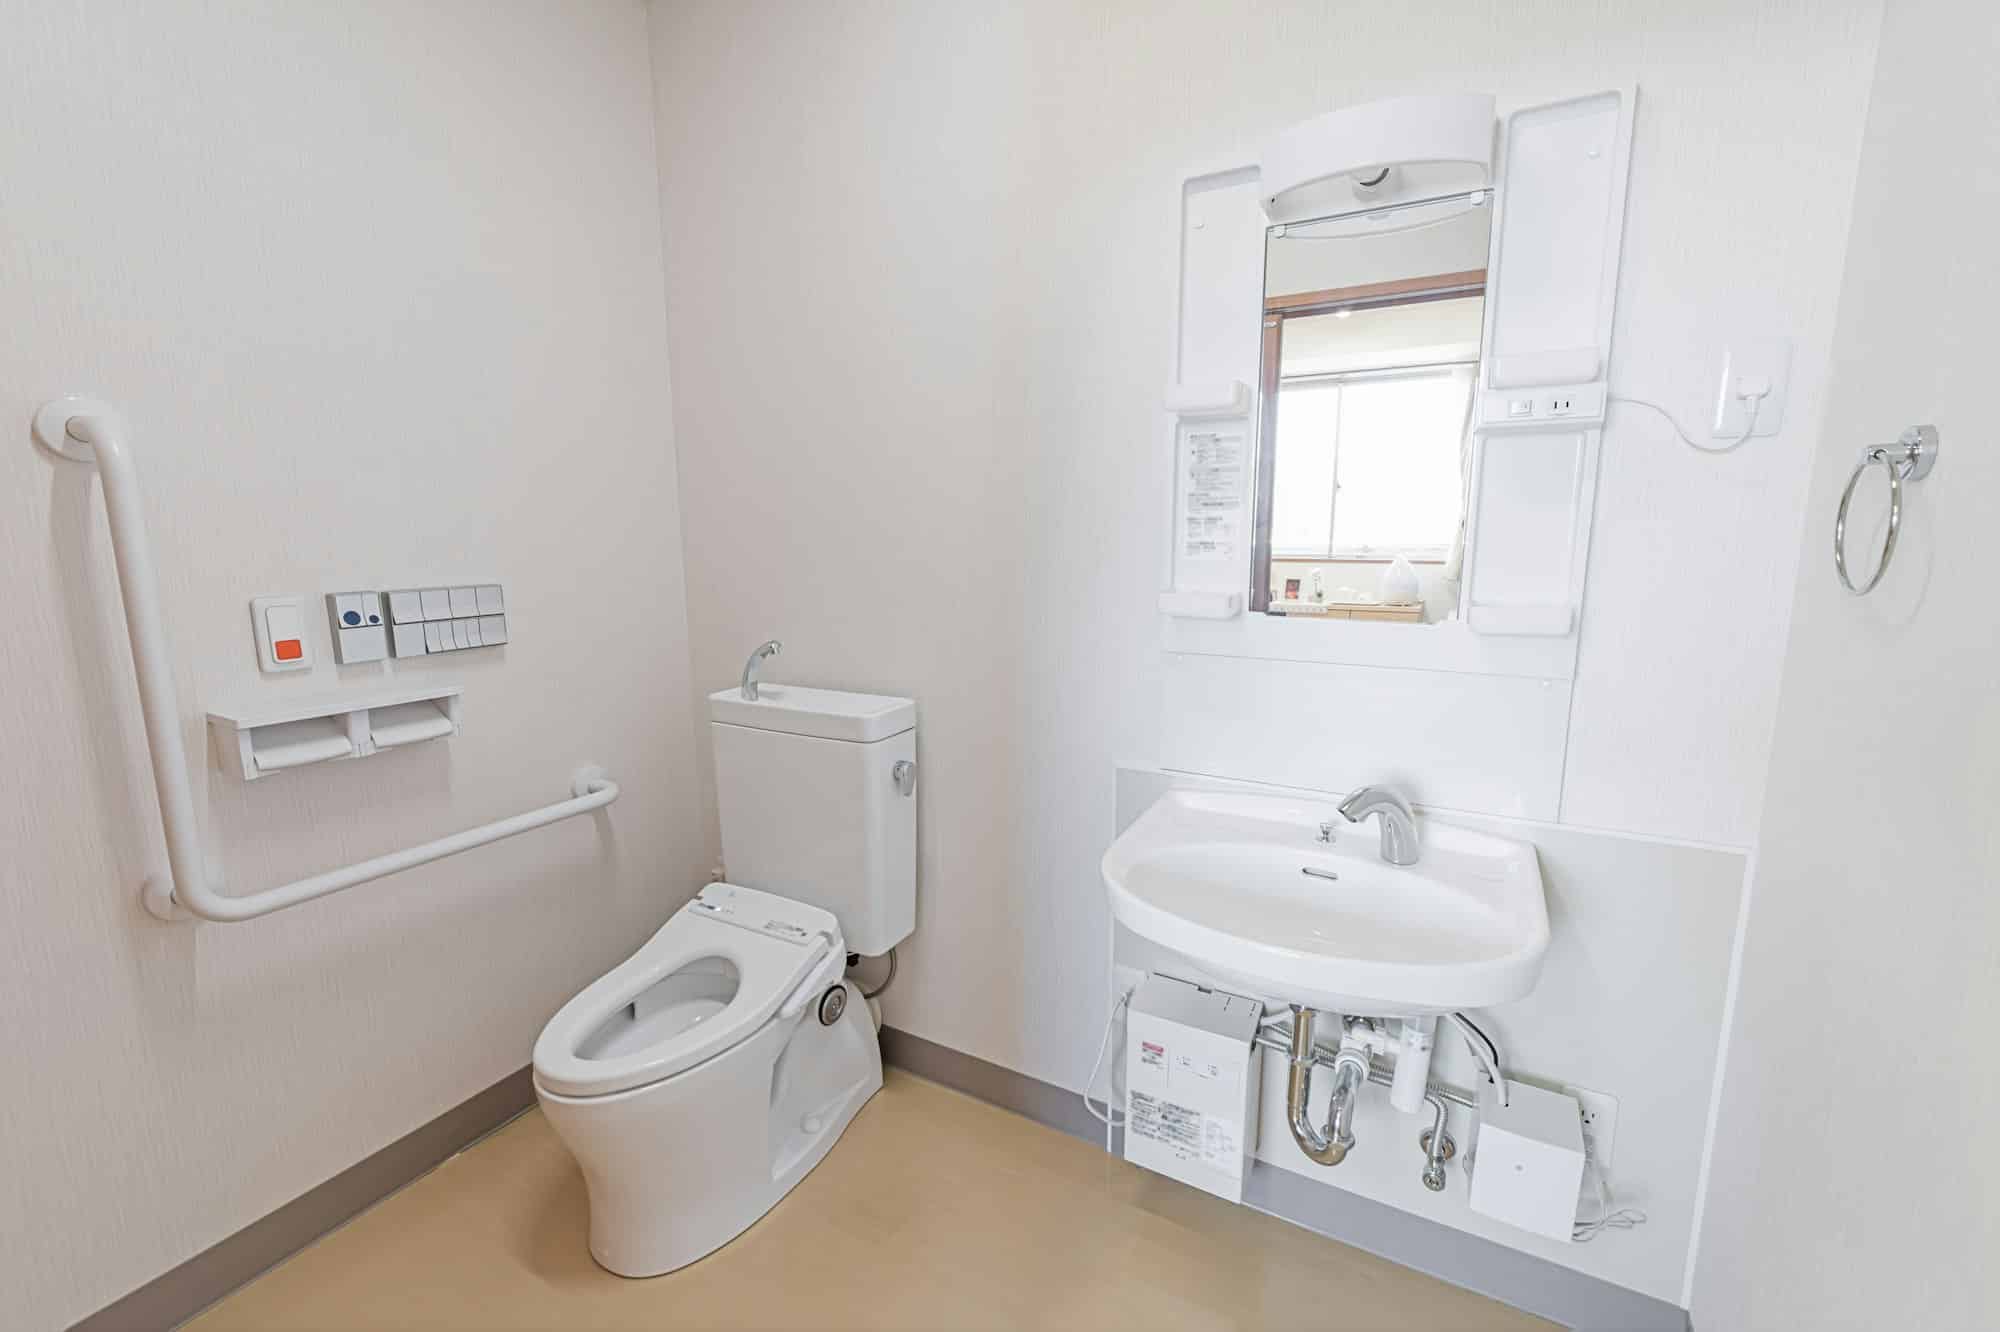 Equipements pour WC : choisir entre une douchette et un kit japonais